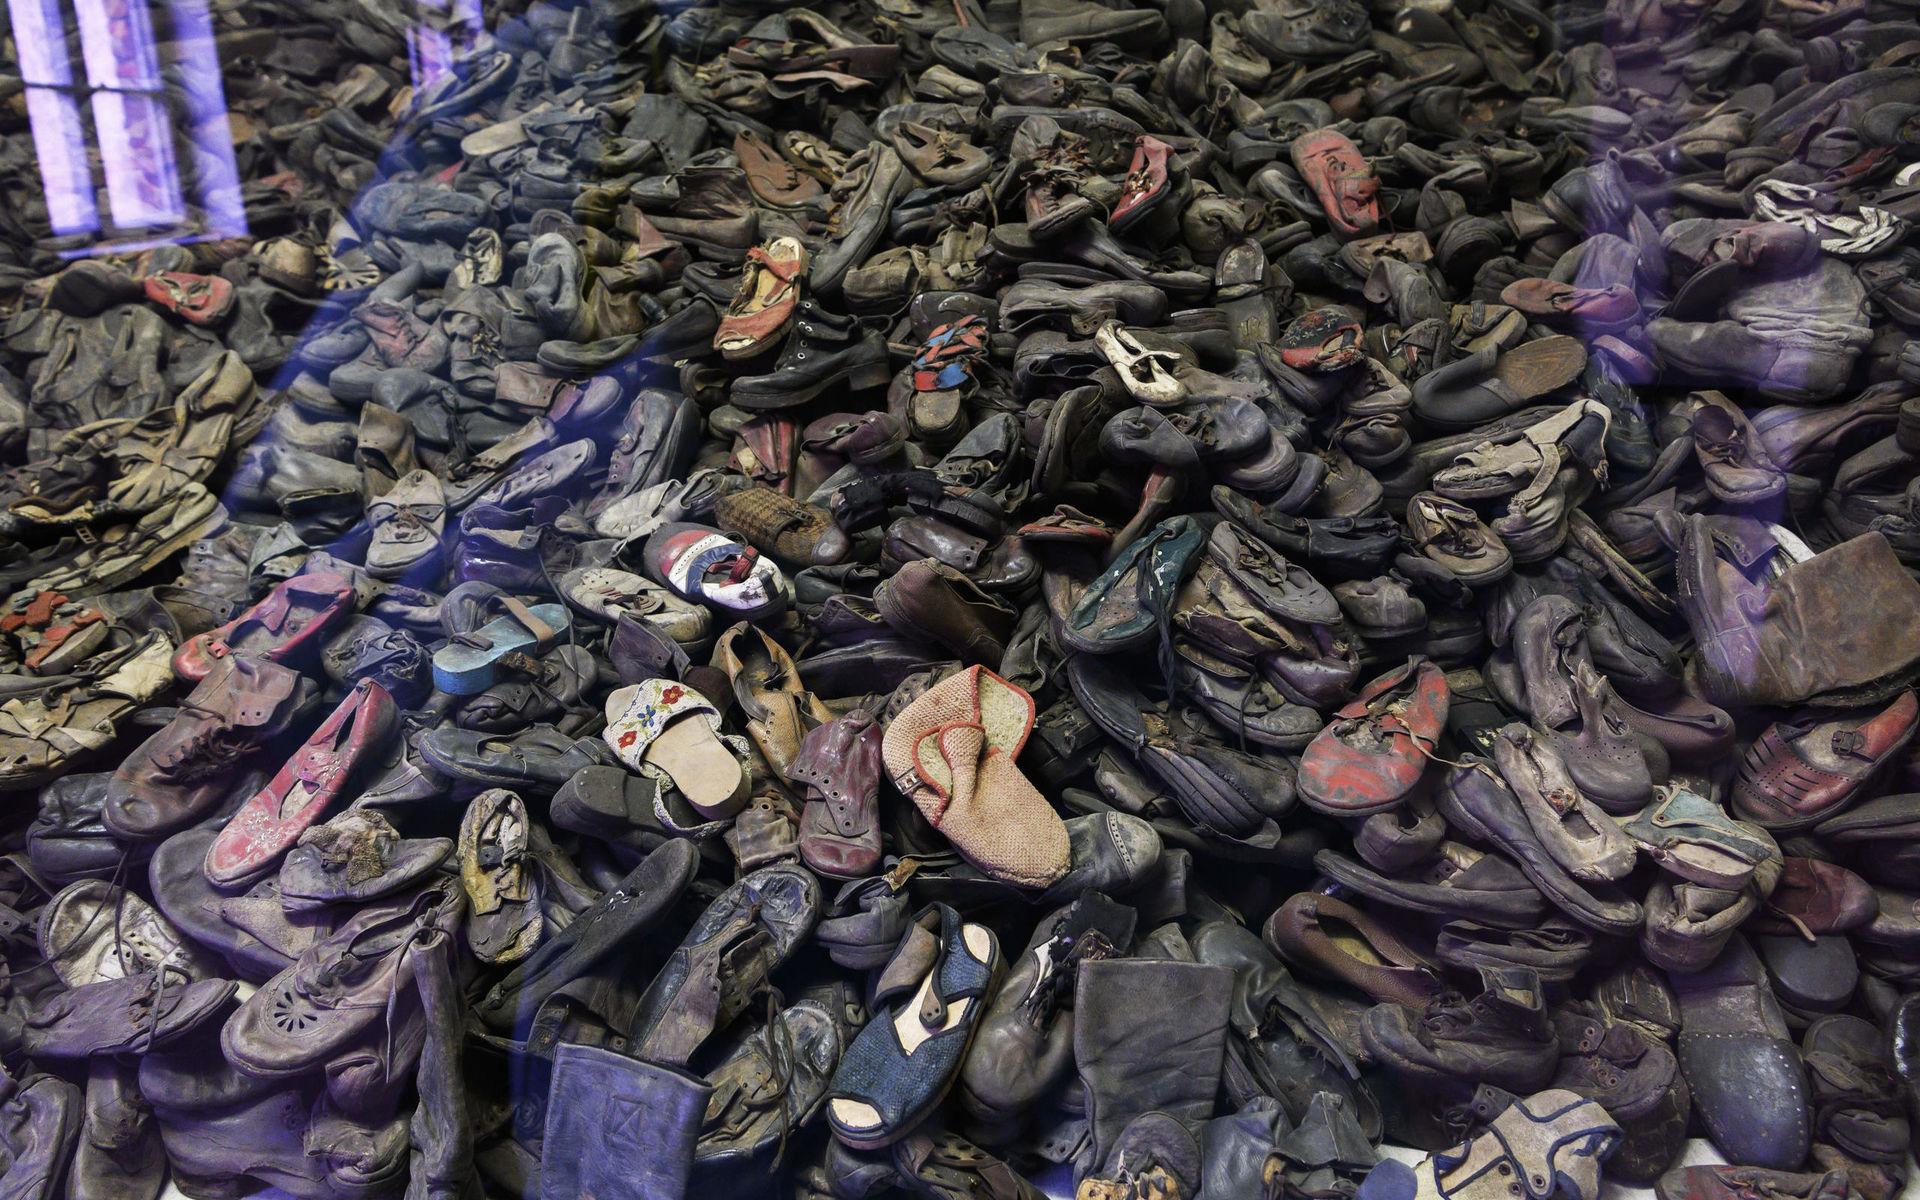 Mängder av skor från de döda har samlats ihop i Auschwitz och även håret som klipptes av när fångarna kom. Håret får dock inte fotograferas.